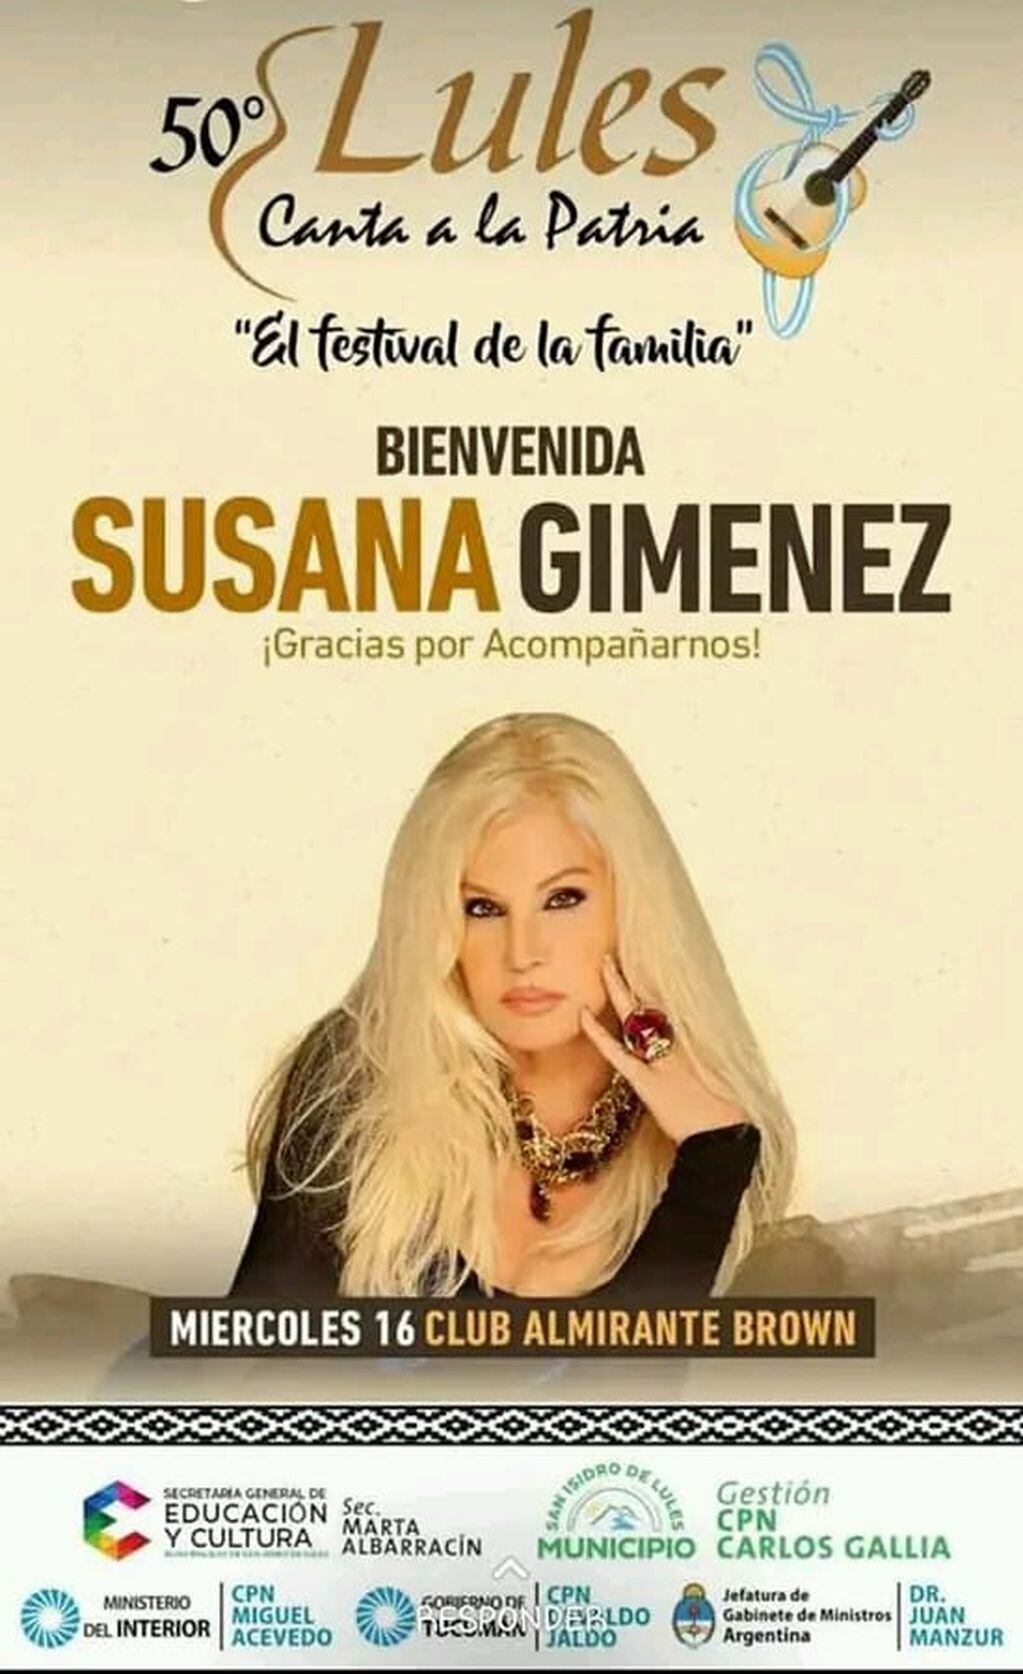 Susana Giménez visitará la ciudad de Lules.